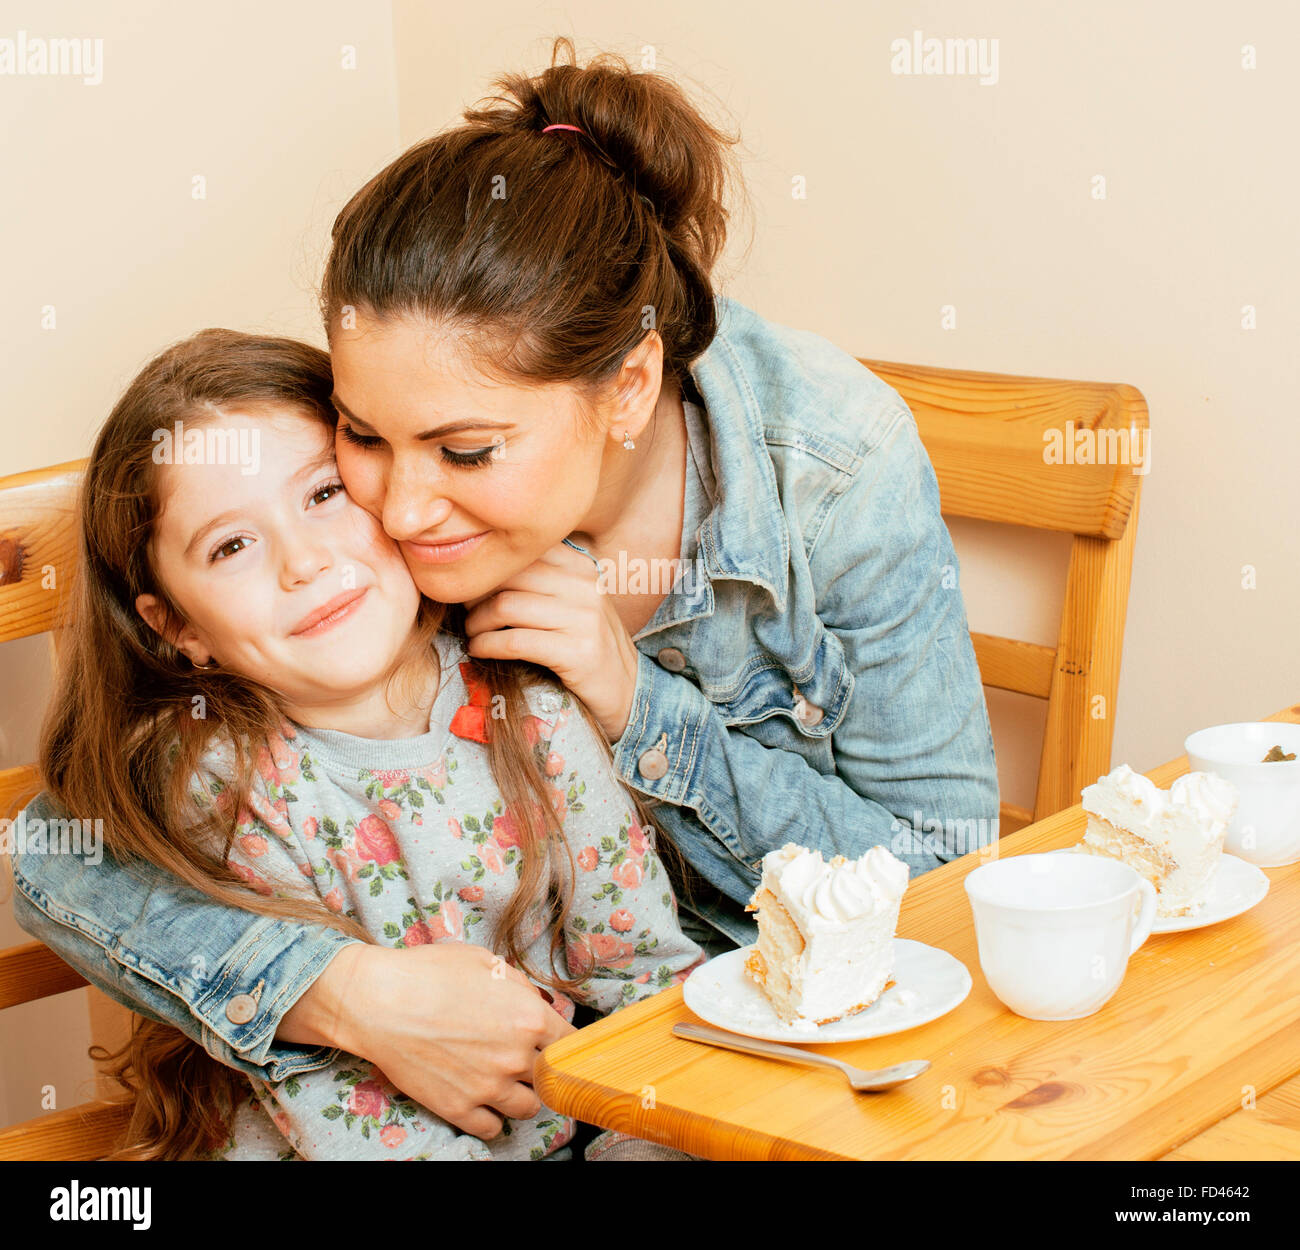 junge Mutter mit Tochter in der Küche Tee zusammen umarmt Feier Kuchen essen trinken Stockfoto